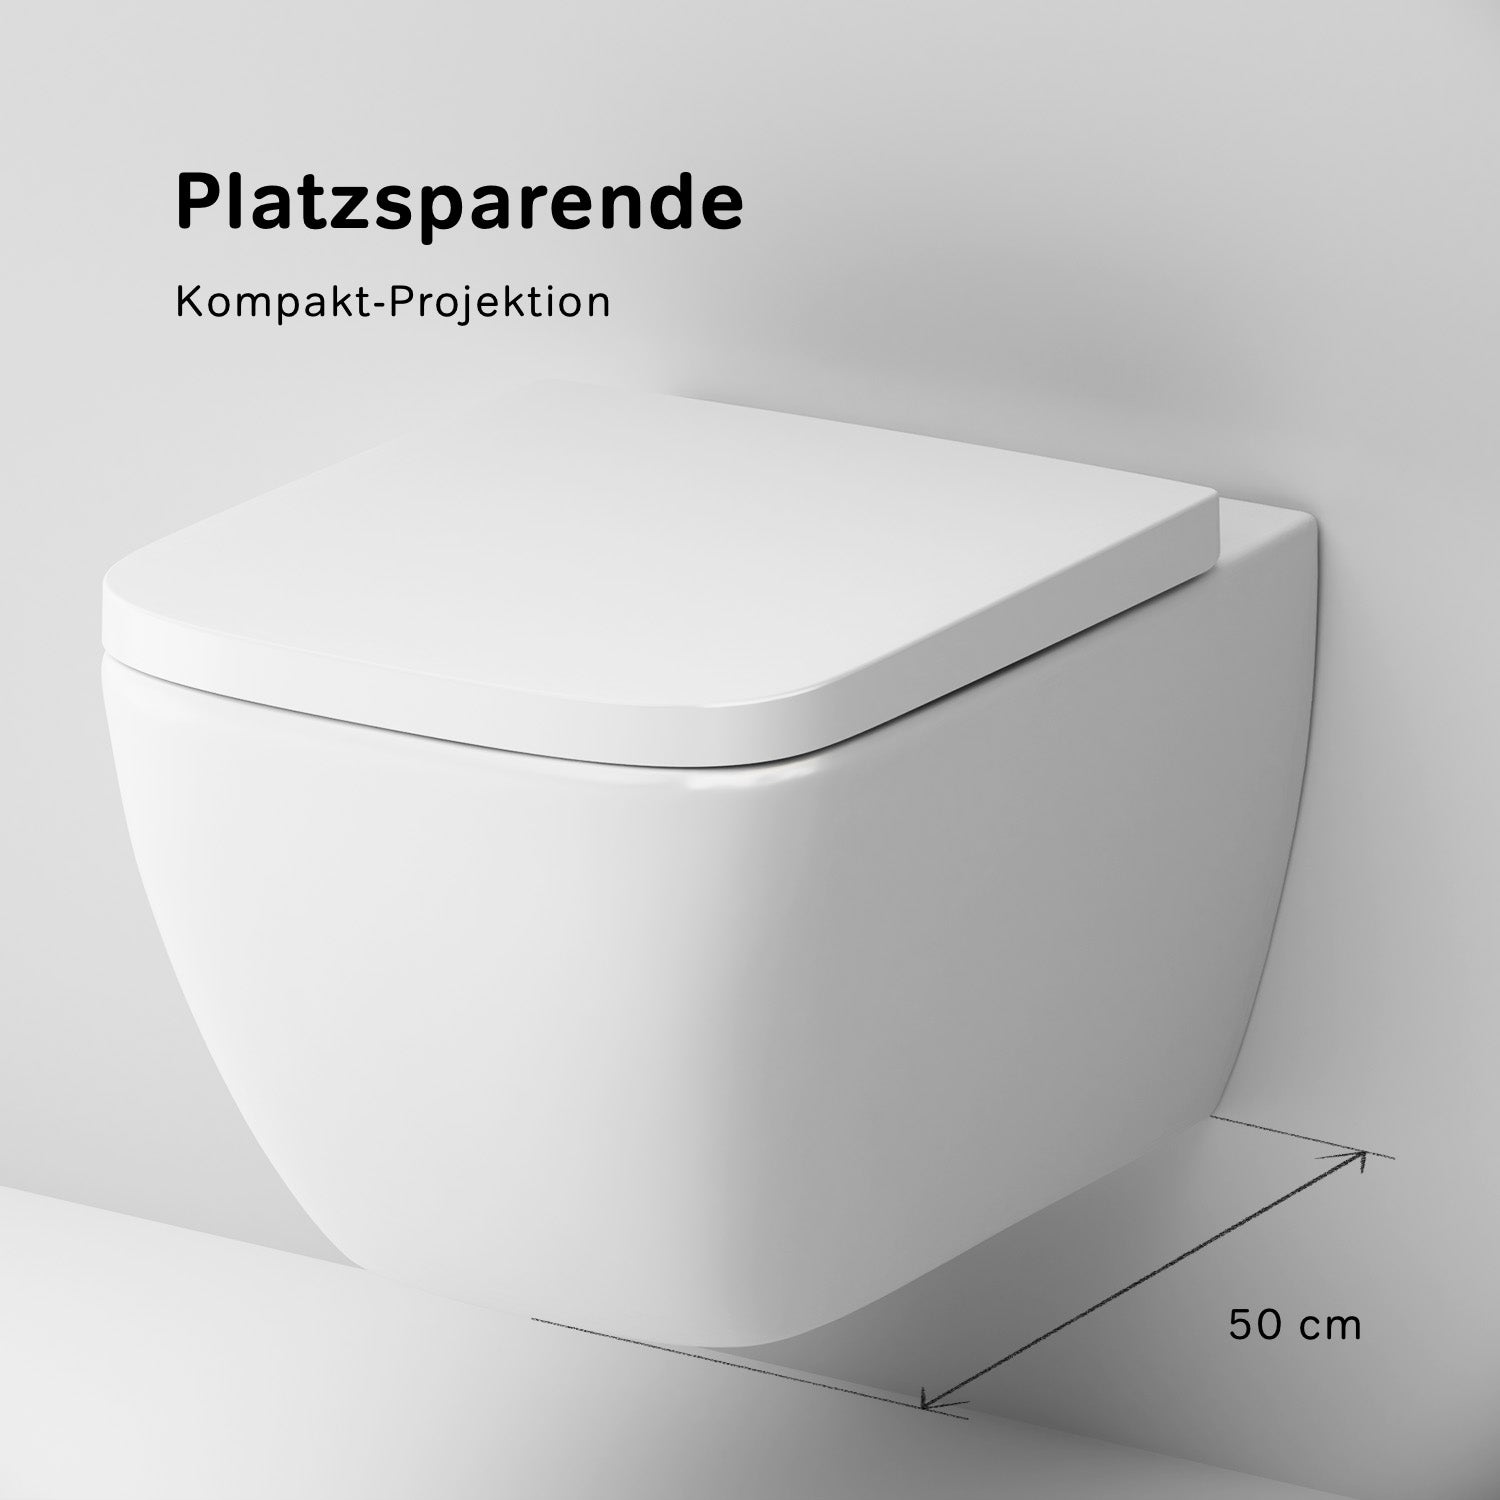 CGA1700SC Gem FlashClean Spülrandloses Wand-WC mit Softclosing-Sitzabdeckung | Online Store von AM.PM